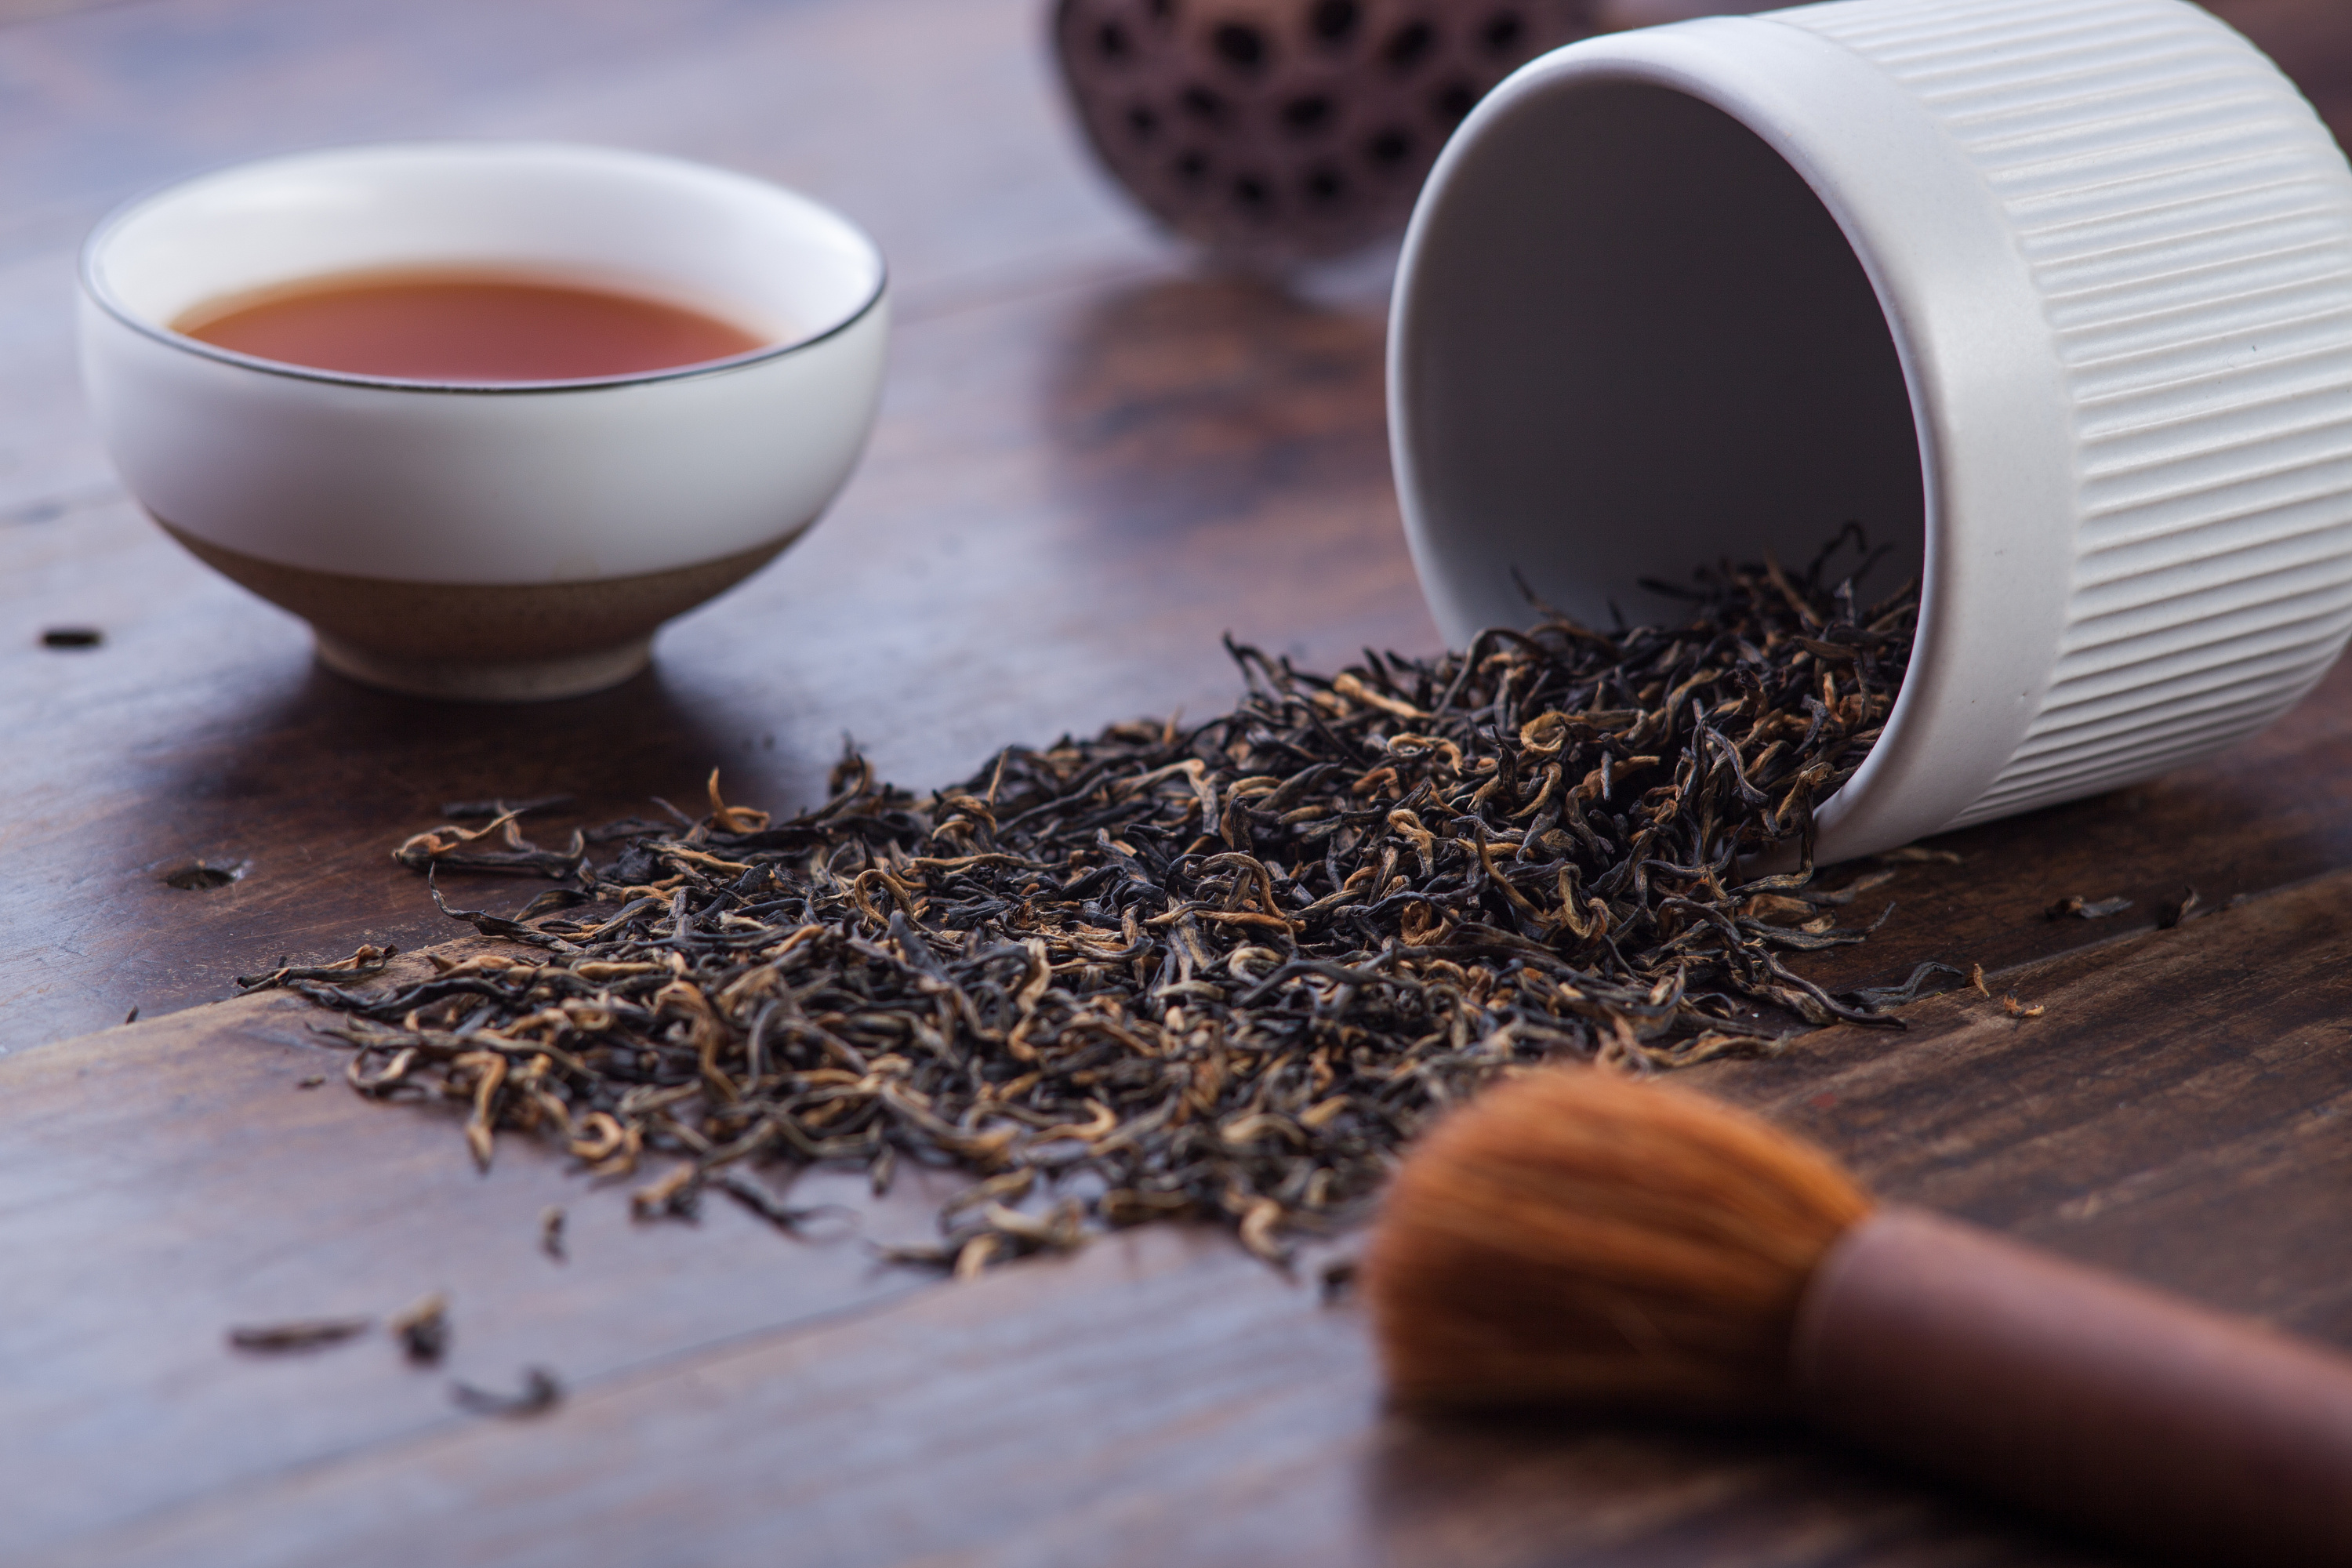 红茶是发酵茶吗?揭秘红茶制作的神秘过程!